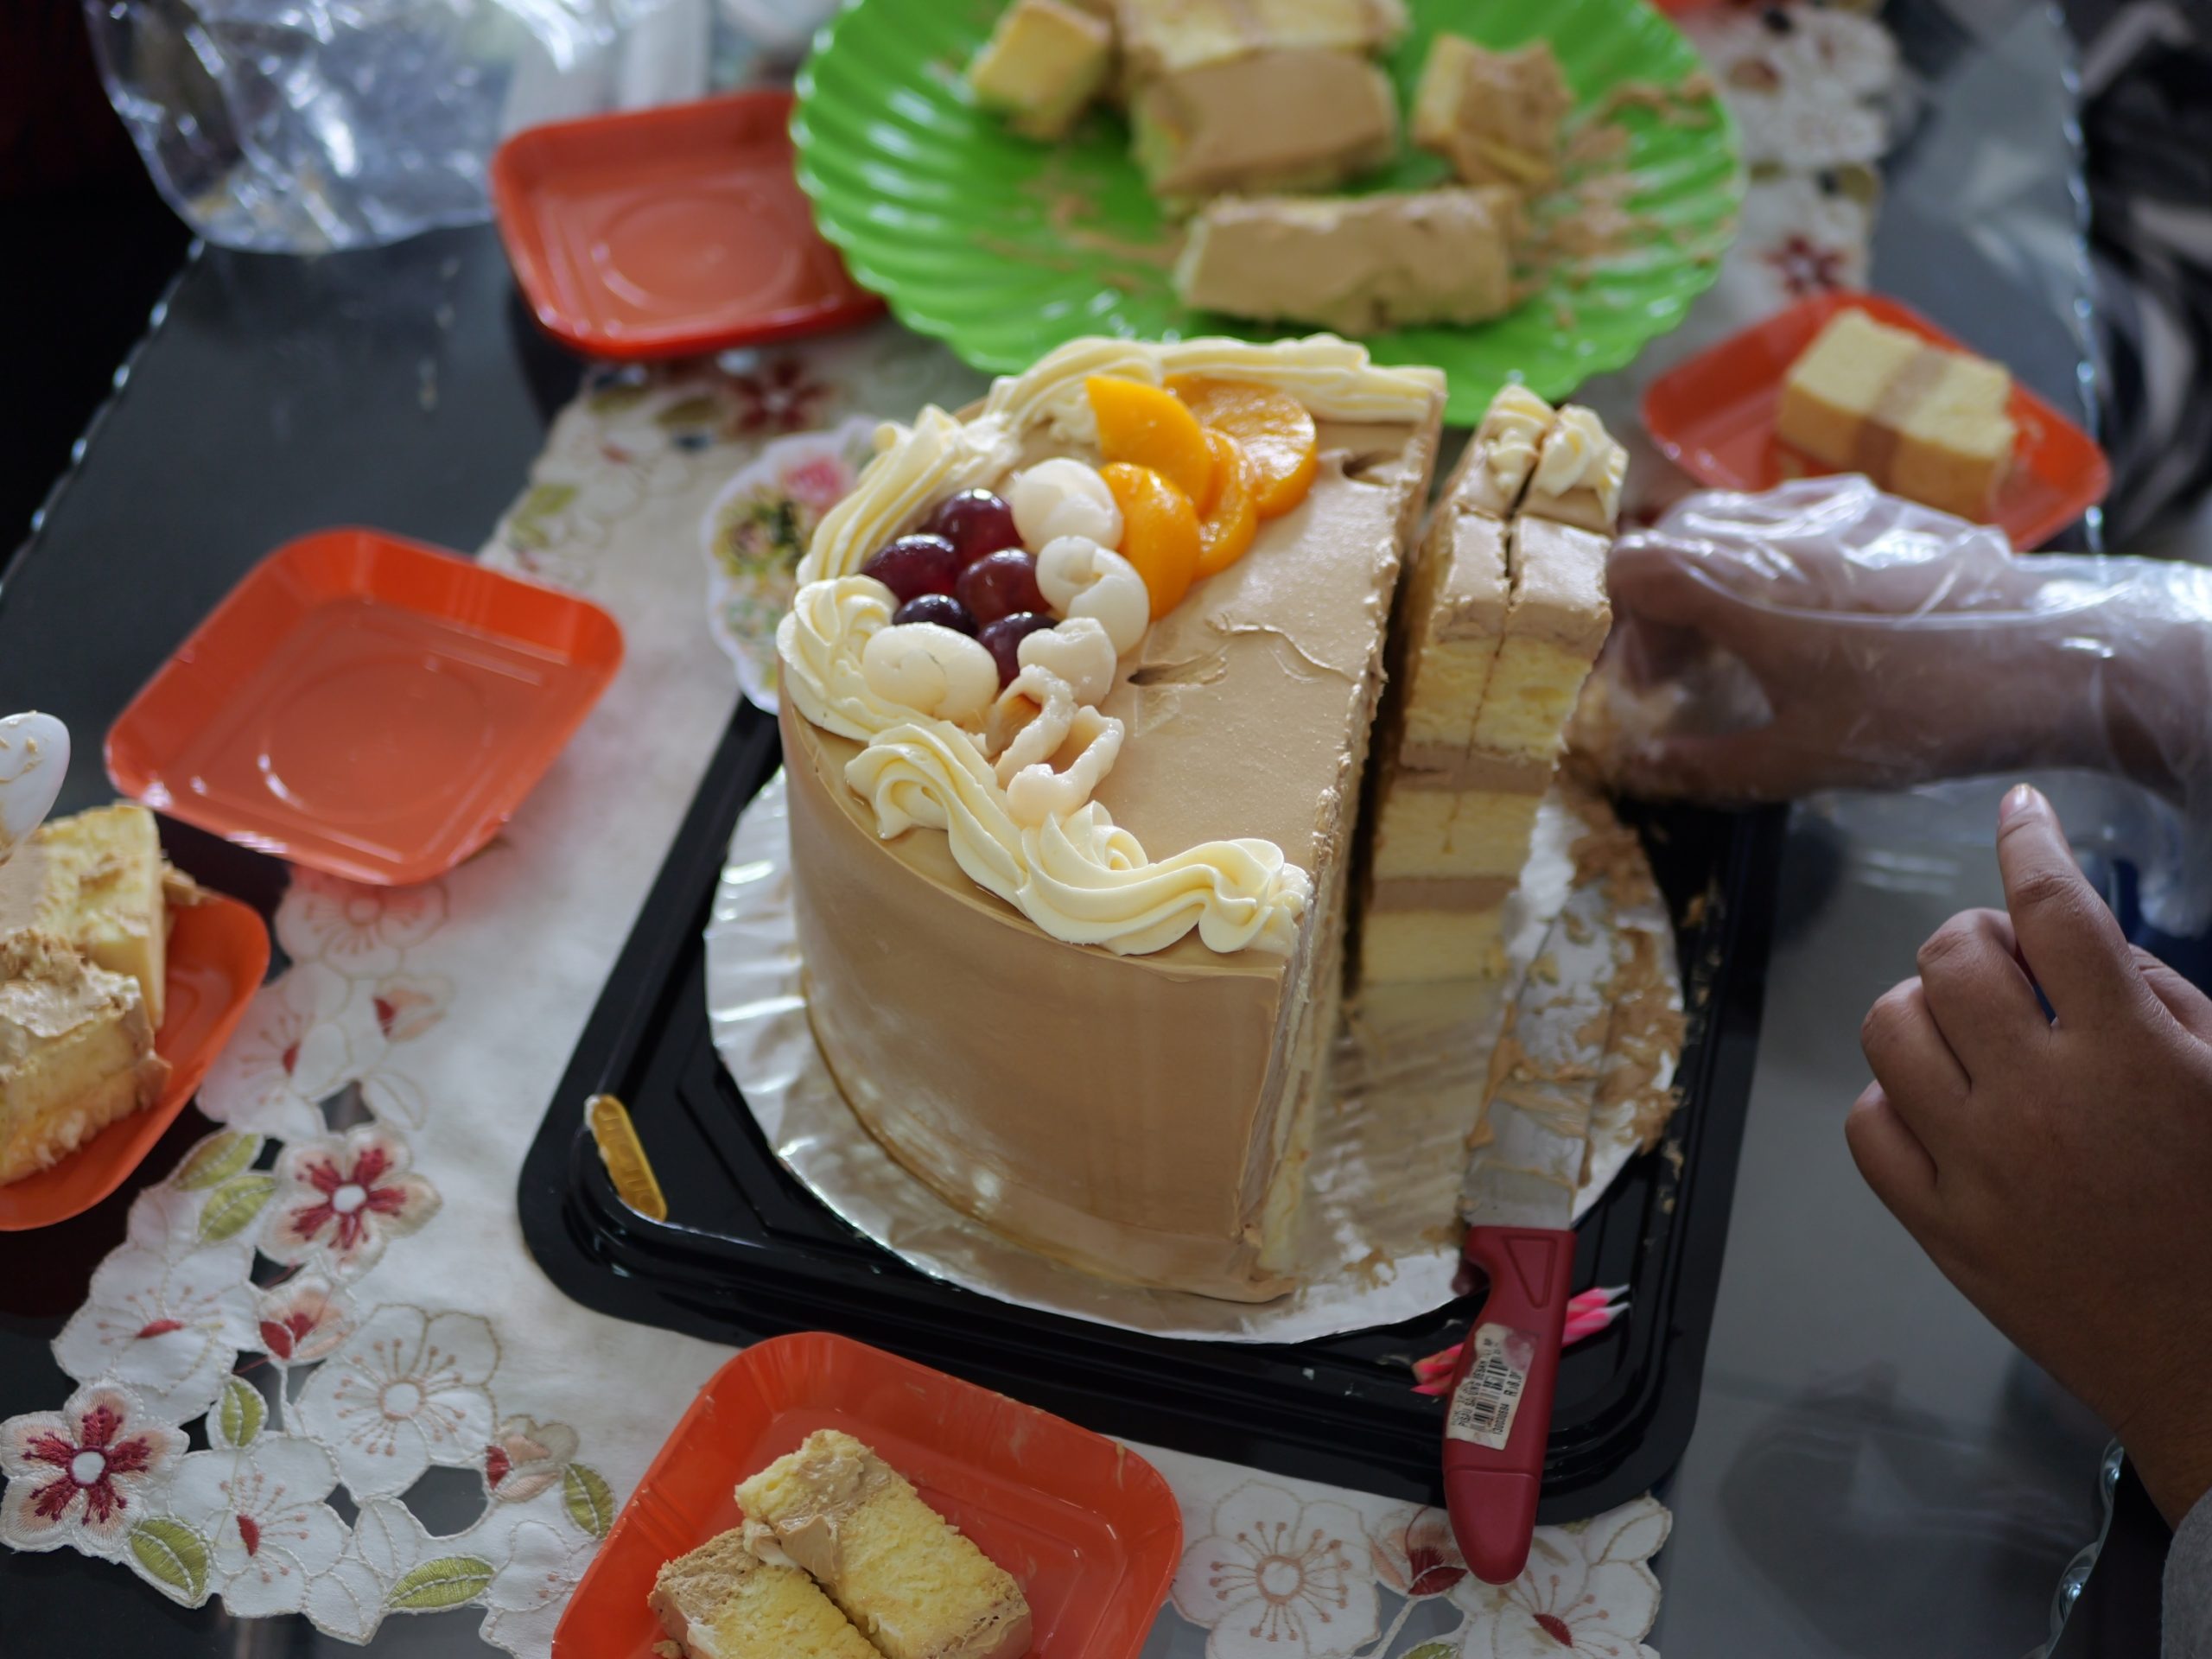 Rođendanska torta strica Svetozara postala je viralna na društvenim mrežama, a kada je vidite pitaćete se samo jedno